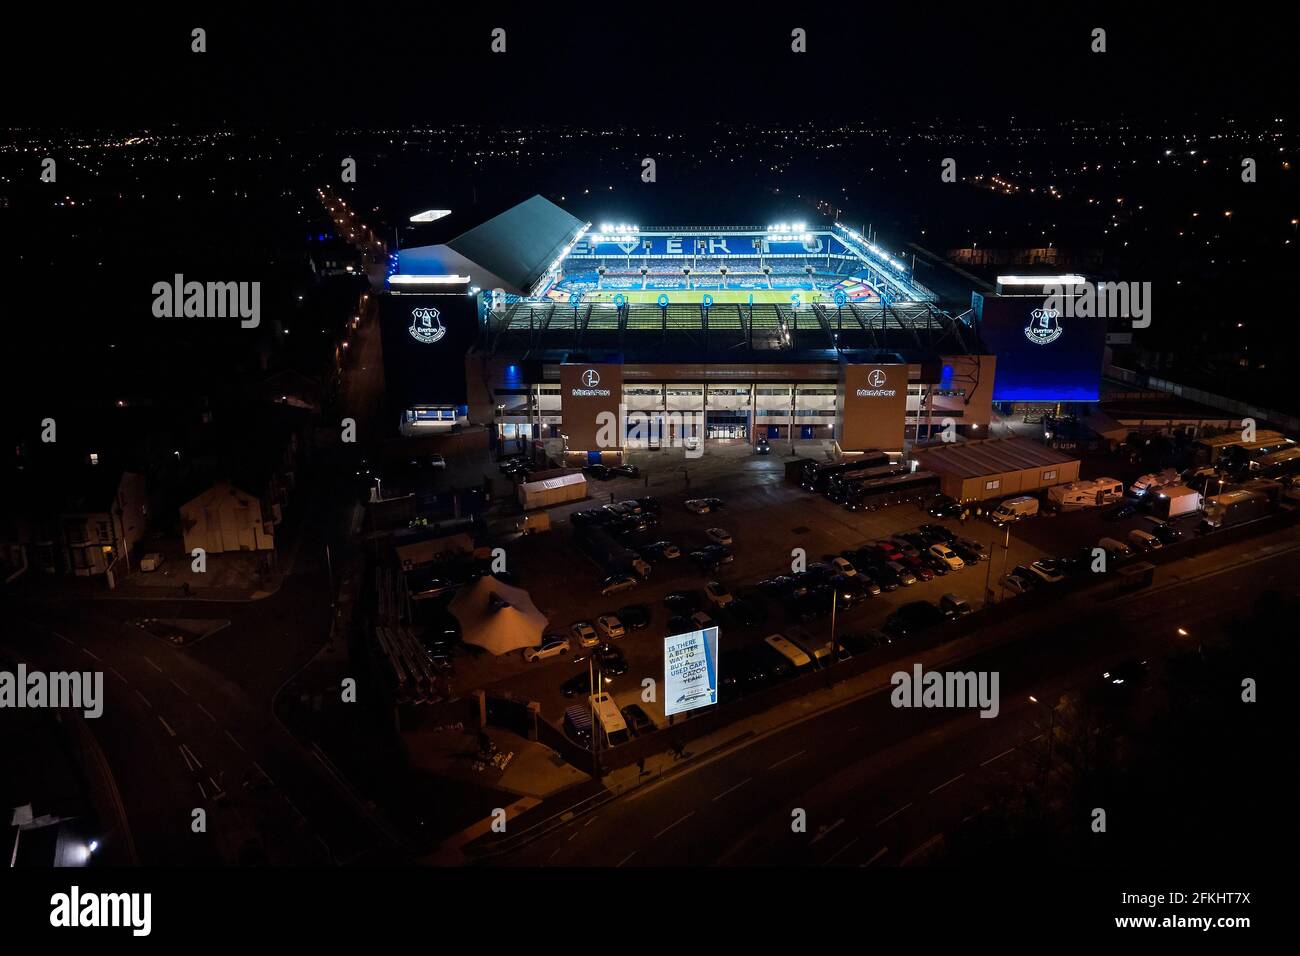 Una vista generale del Goodison Park di notte con i riflettori accesi dopo una partita di calcio che mostra lo stadio nella sua ambientazione urbana Foto Stock